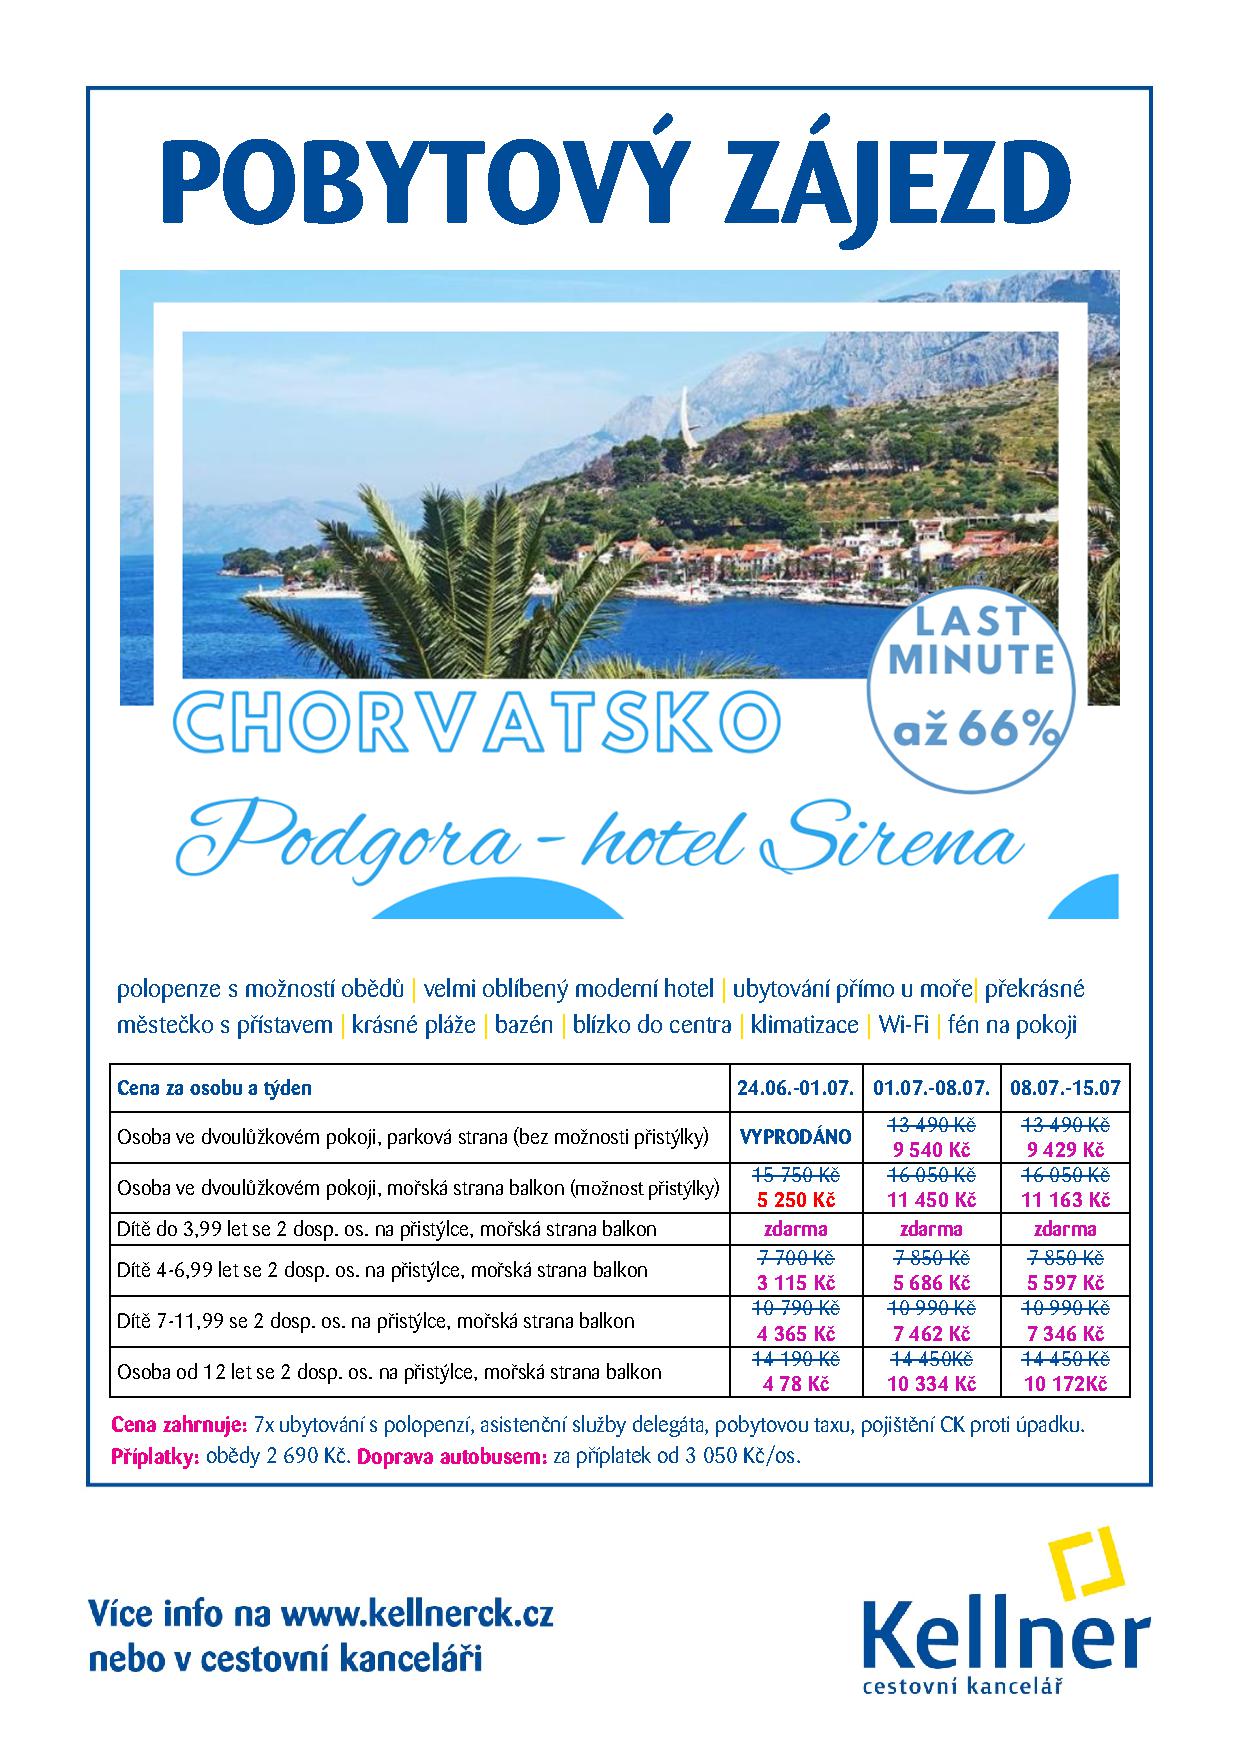 20. Chorvatsko - Podgora - hotel Sirena - LM